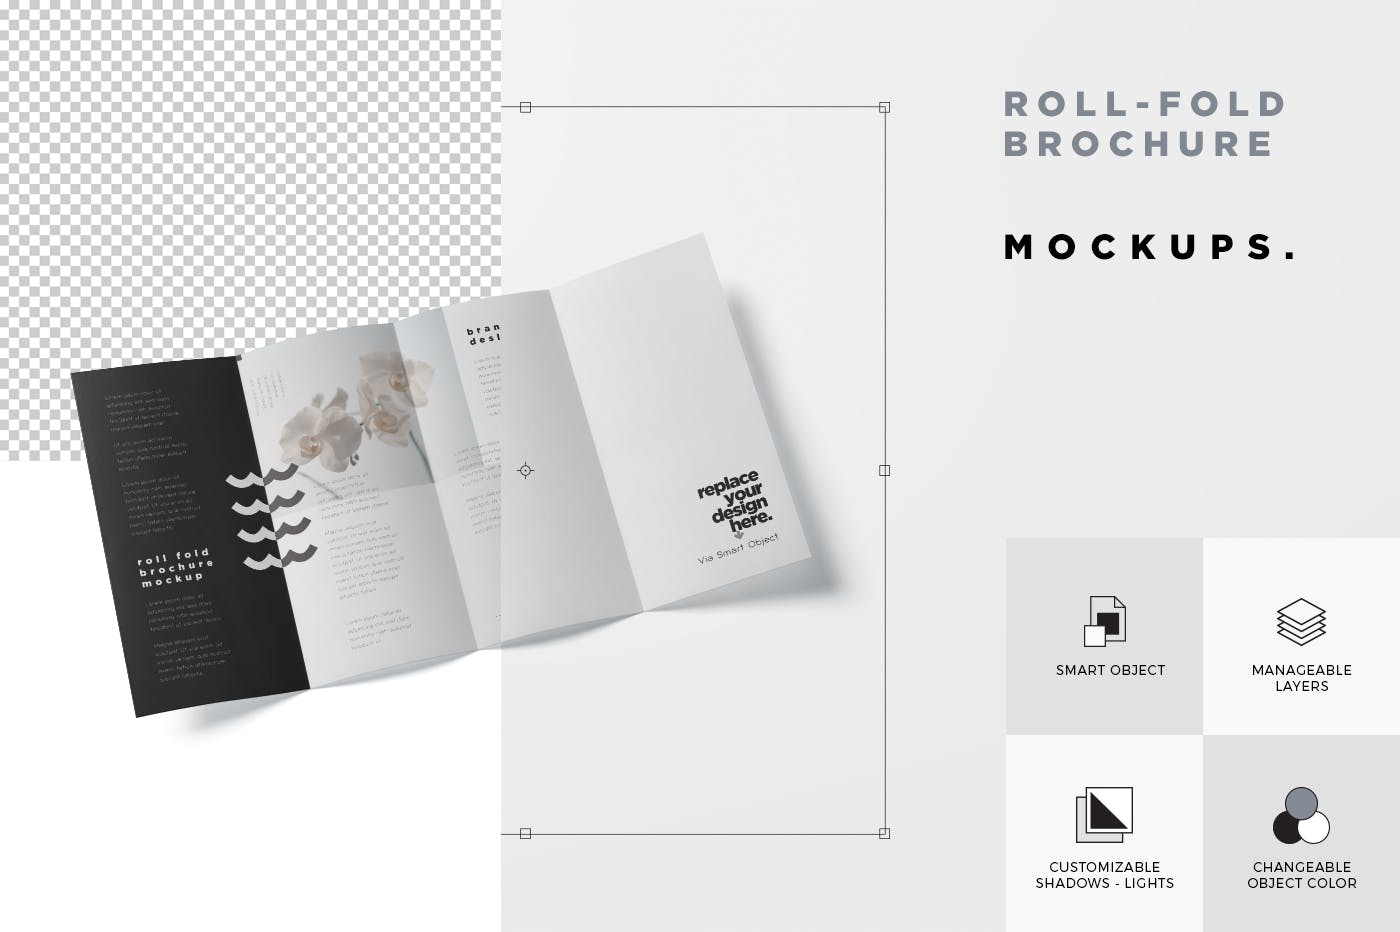 折叠设计风格企业传单宣传册设计样机 Roll-Fold Br